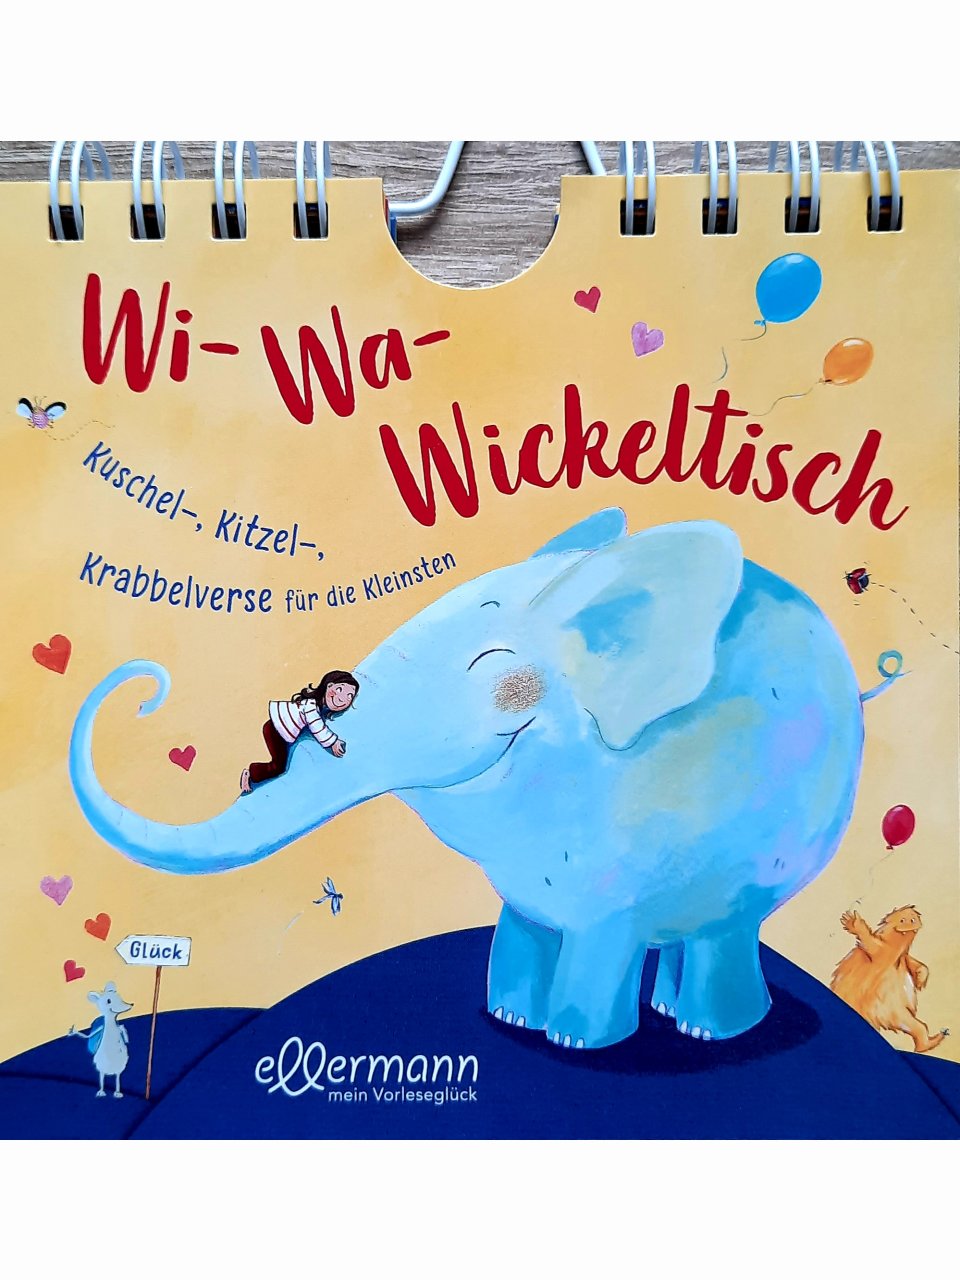 Wi-Wa-Wickeltisch